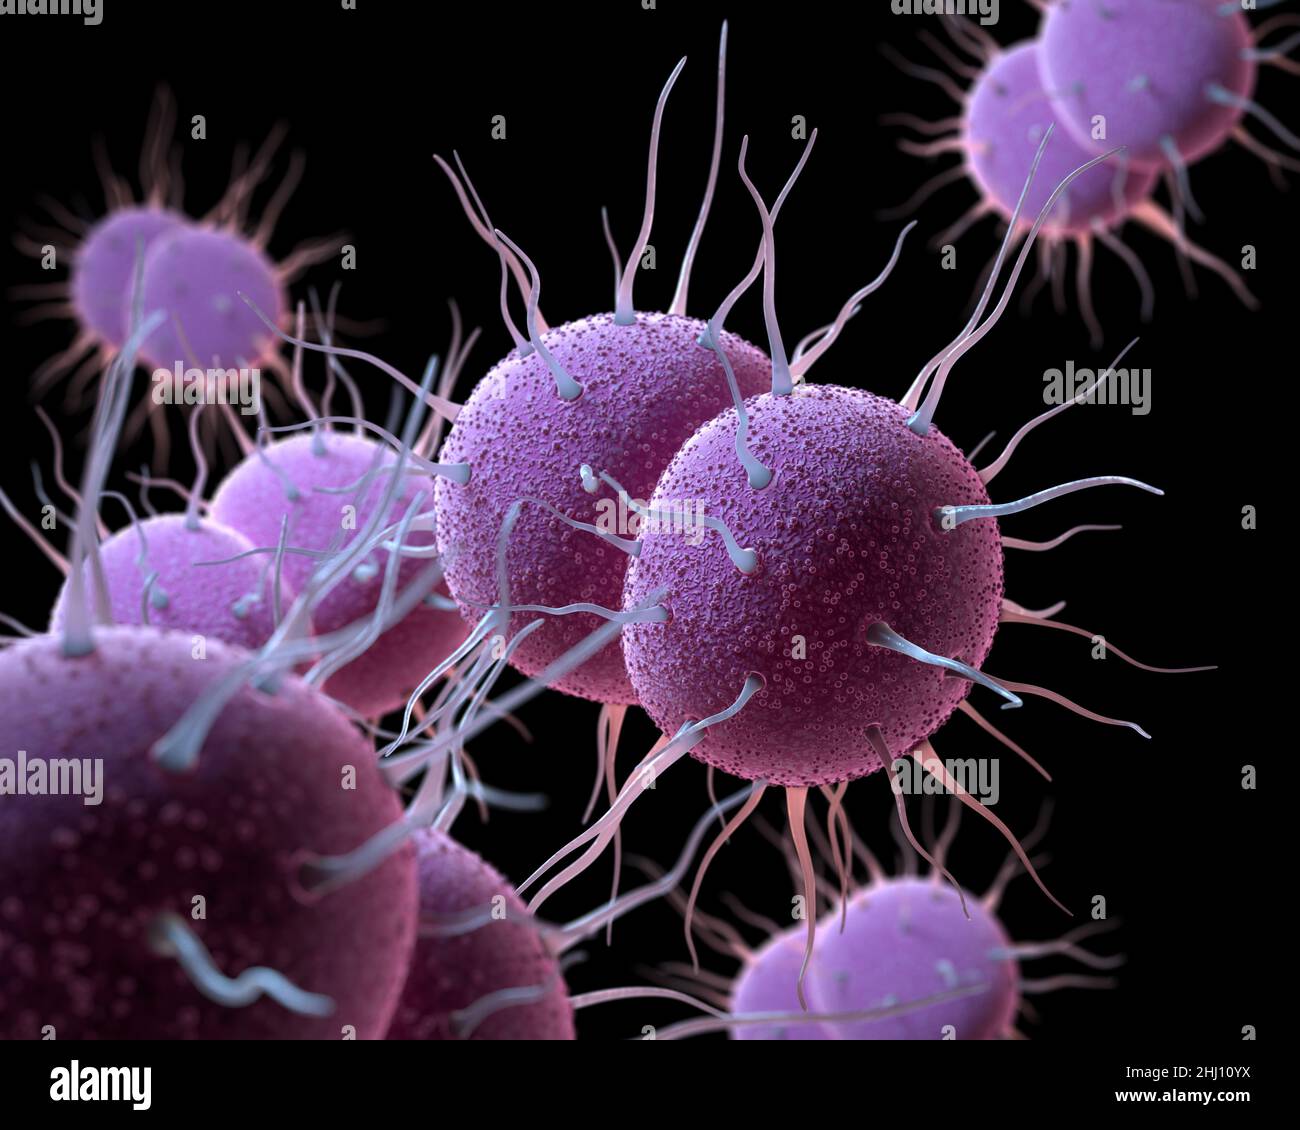 Das Bakterium Neisseria gonorrhoeae, verantwortlich für die sexuell übertragenen Infektionen Gonorrhöe. 3D-Darstellung Stockfoto